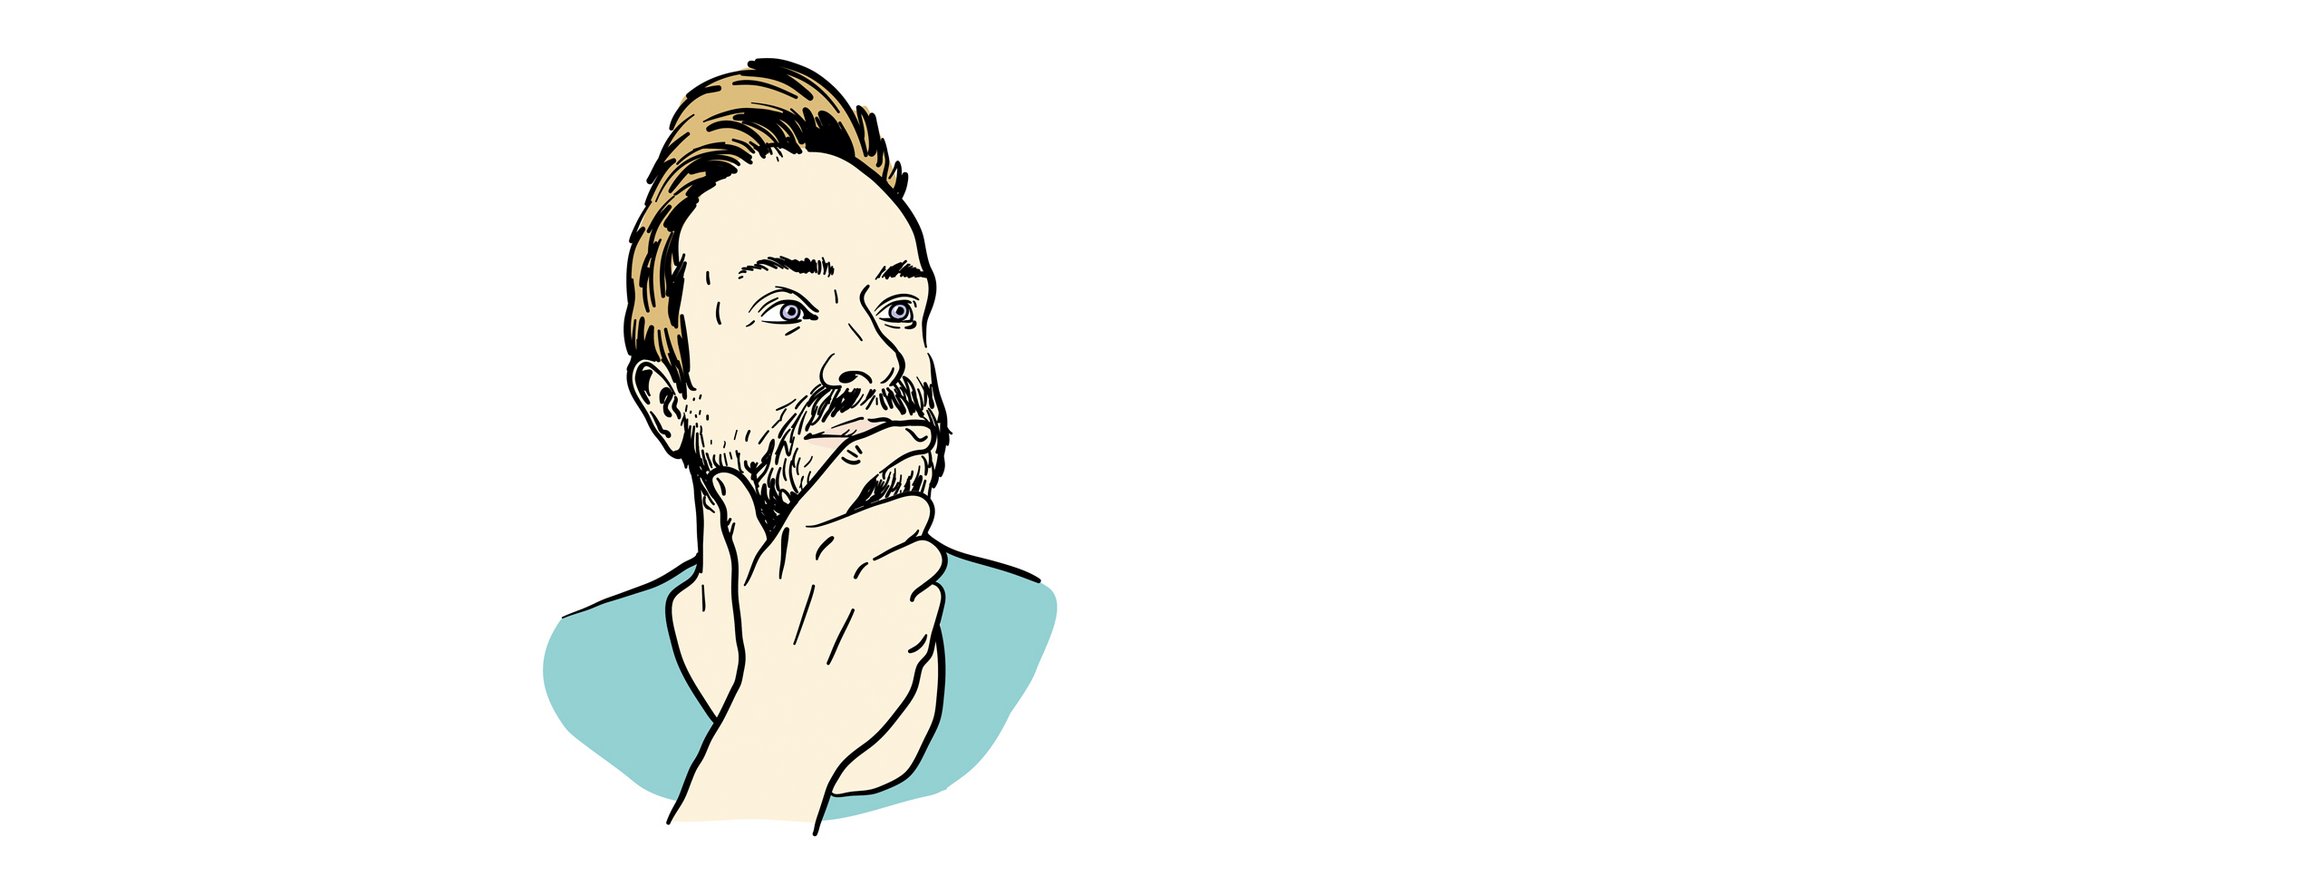 Die Illustration zeigt einen jungen Mann mit Bart, der sich nachdenklich unbewusst mit seiner Hand am Kinn berührt